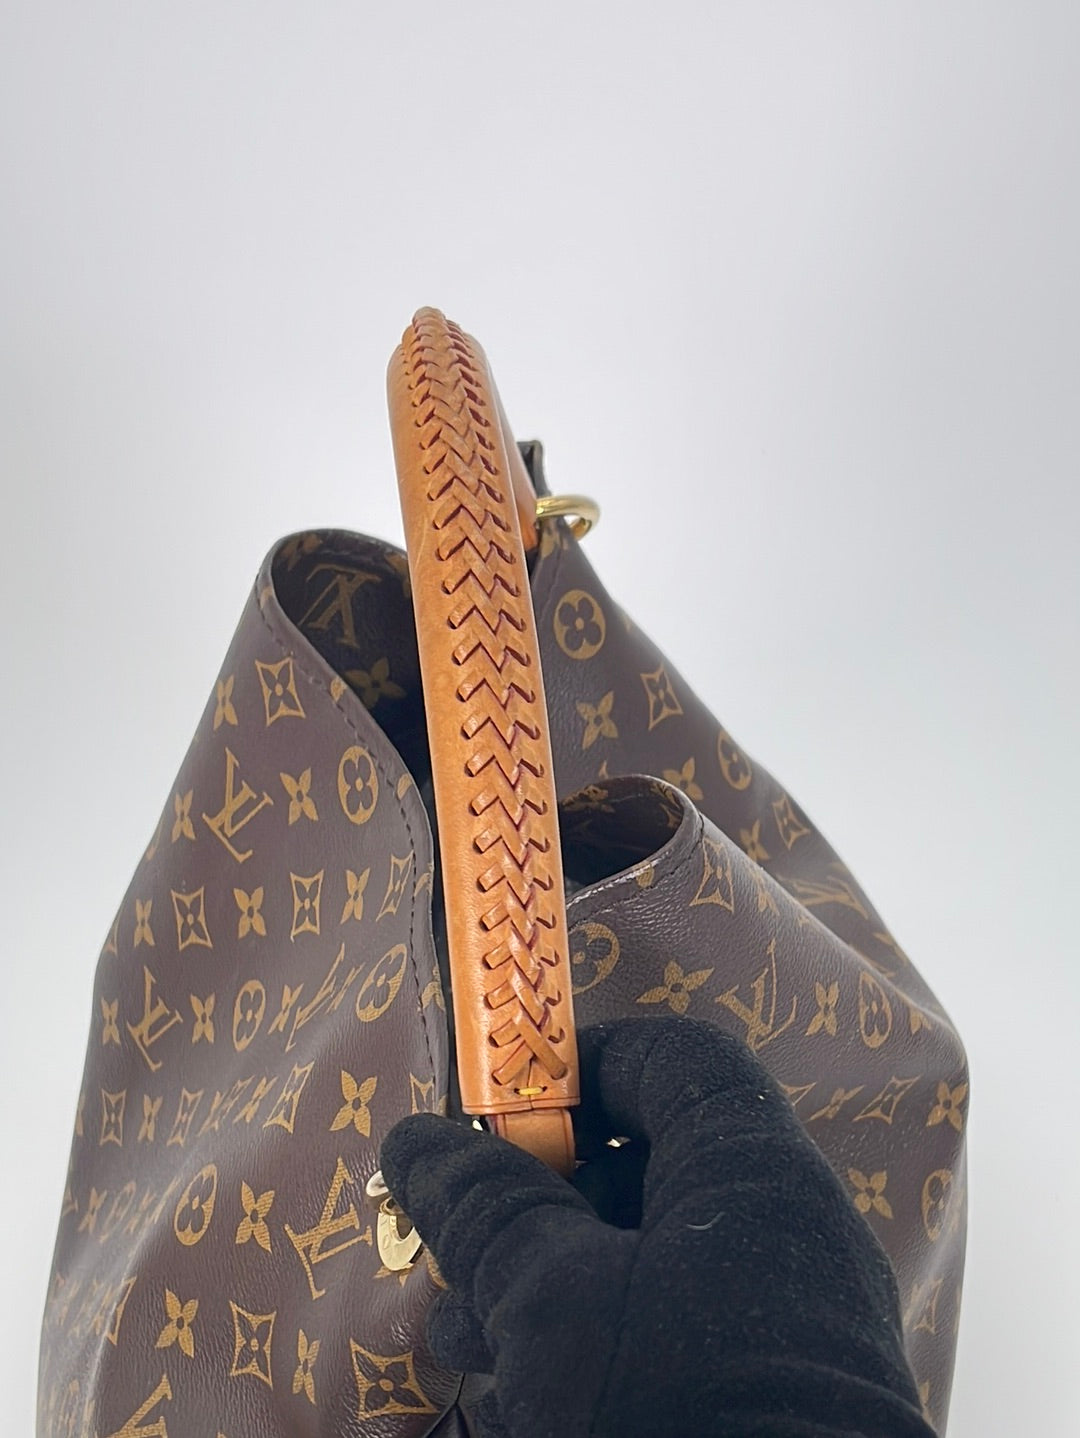 Authentic Louis Vuitton Artsy MM Monogram Canvas Shoulder Bag tote